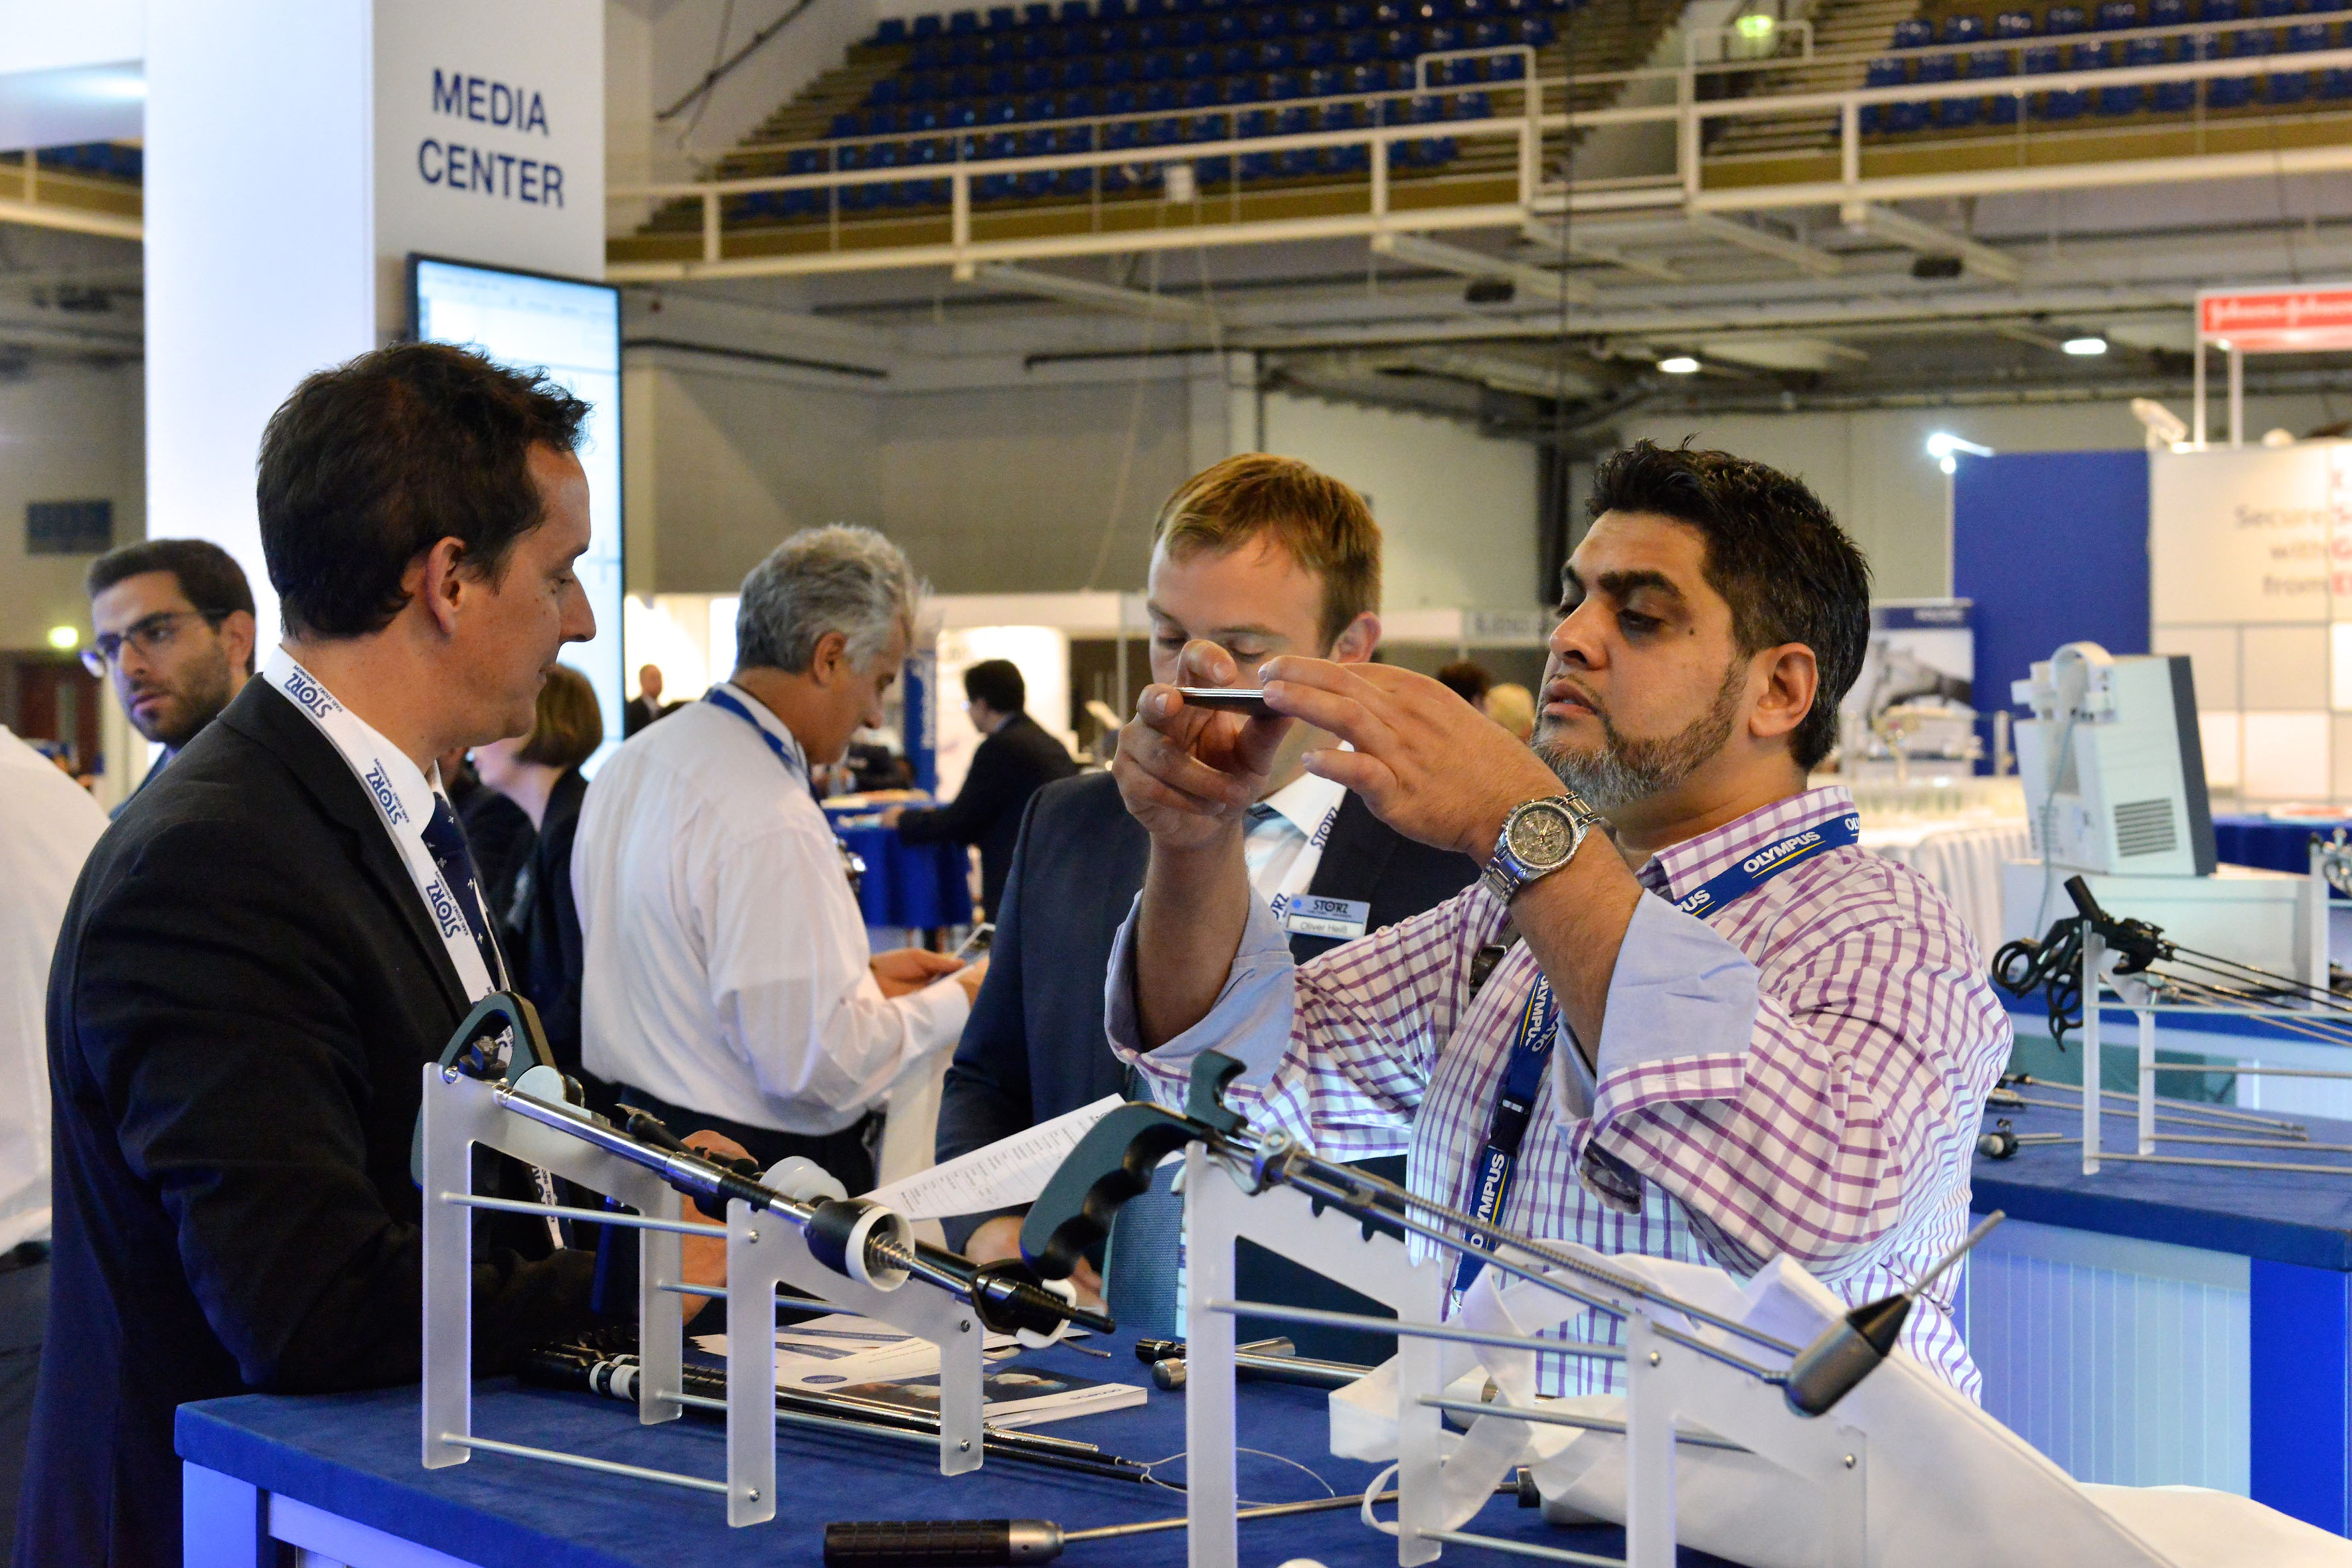 Budapest media center / ESGE congress 2015